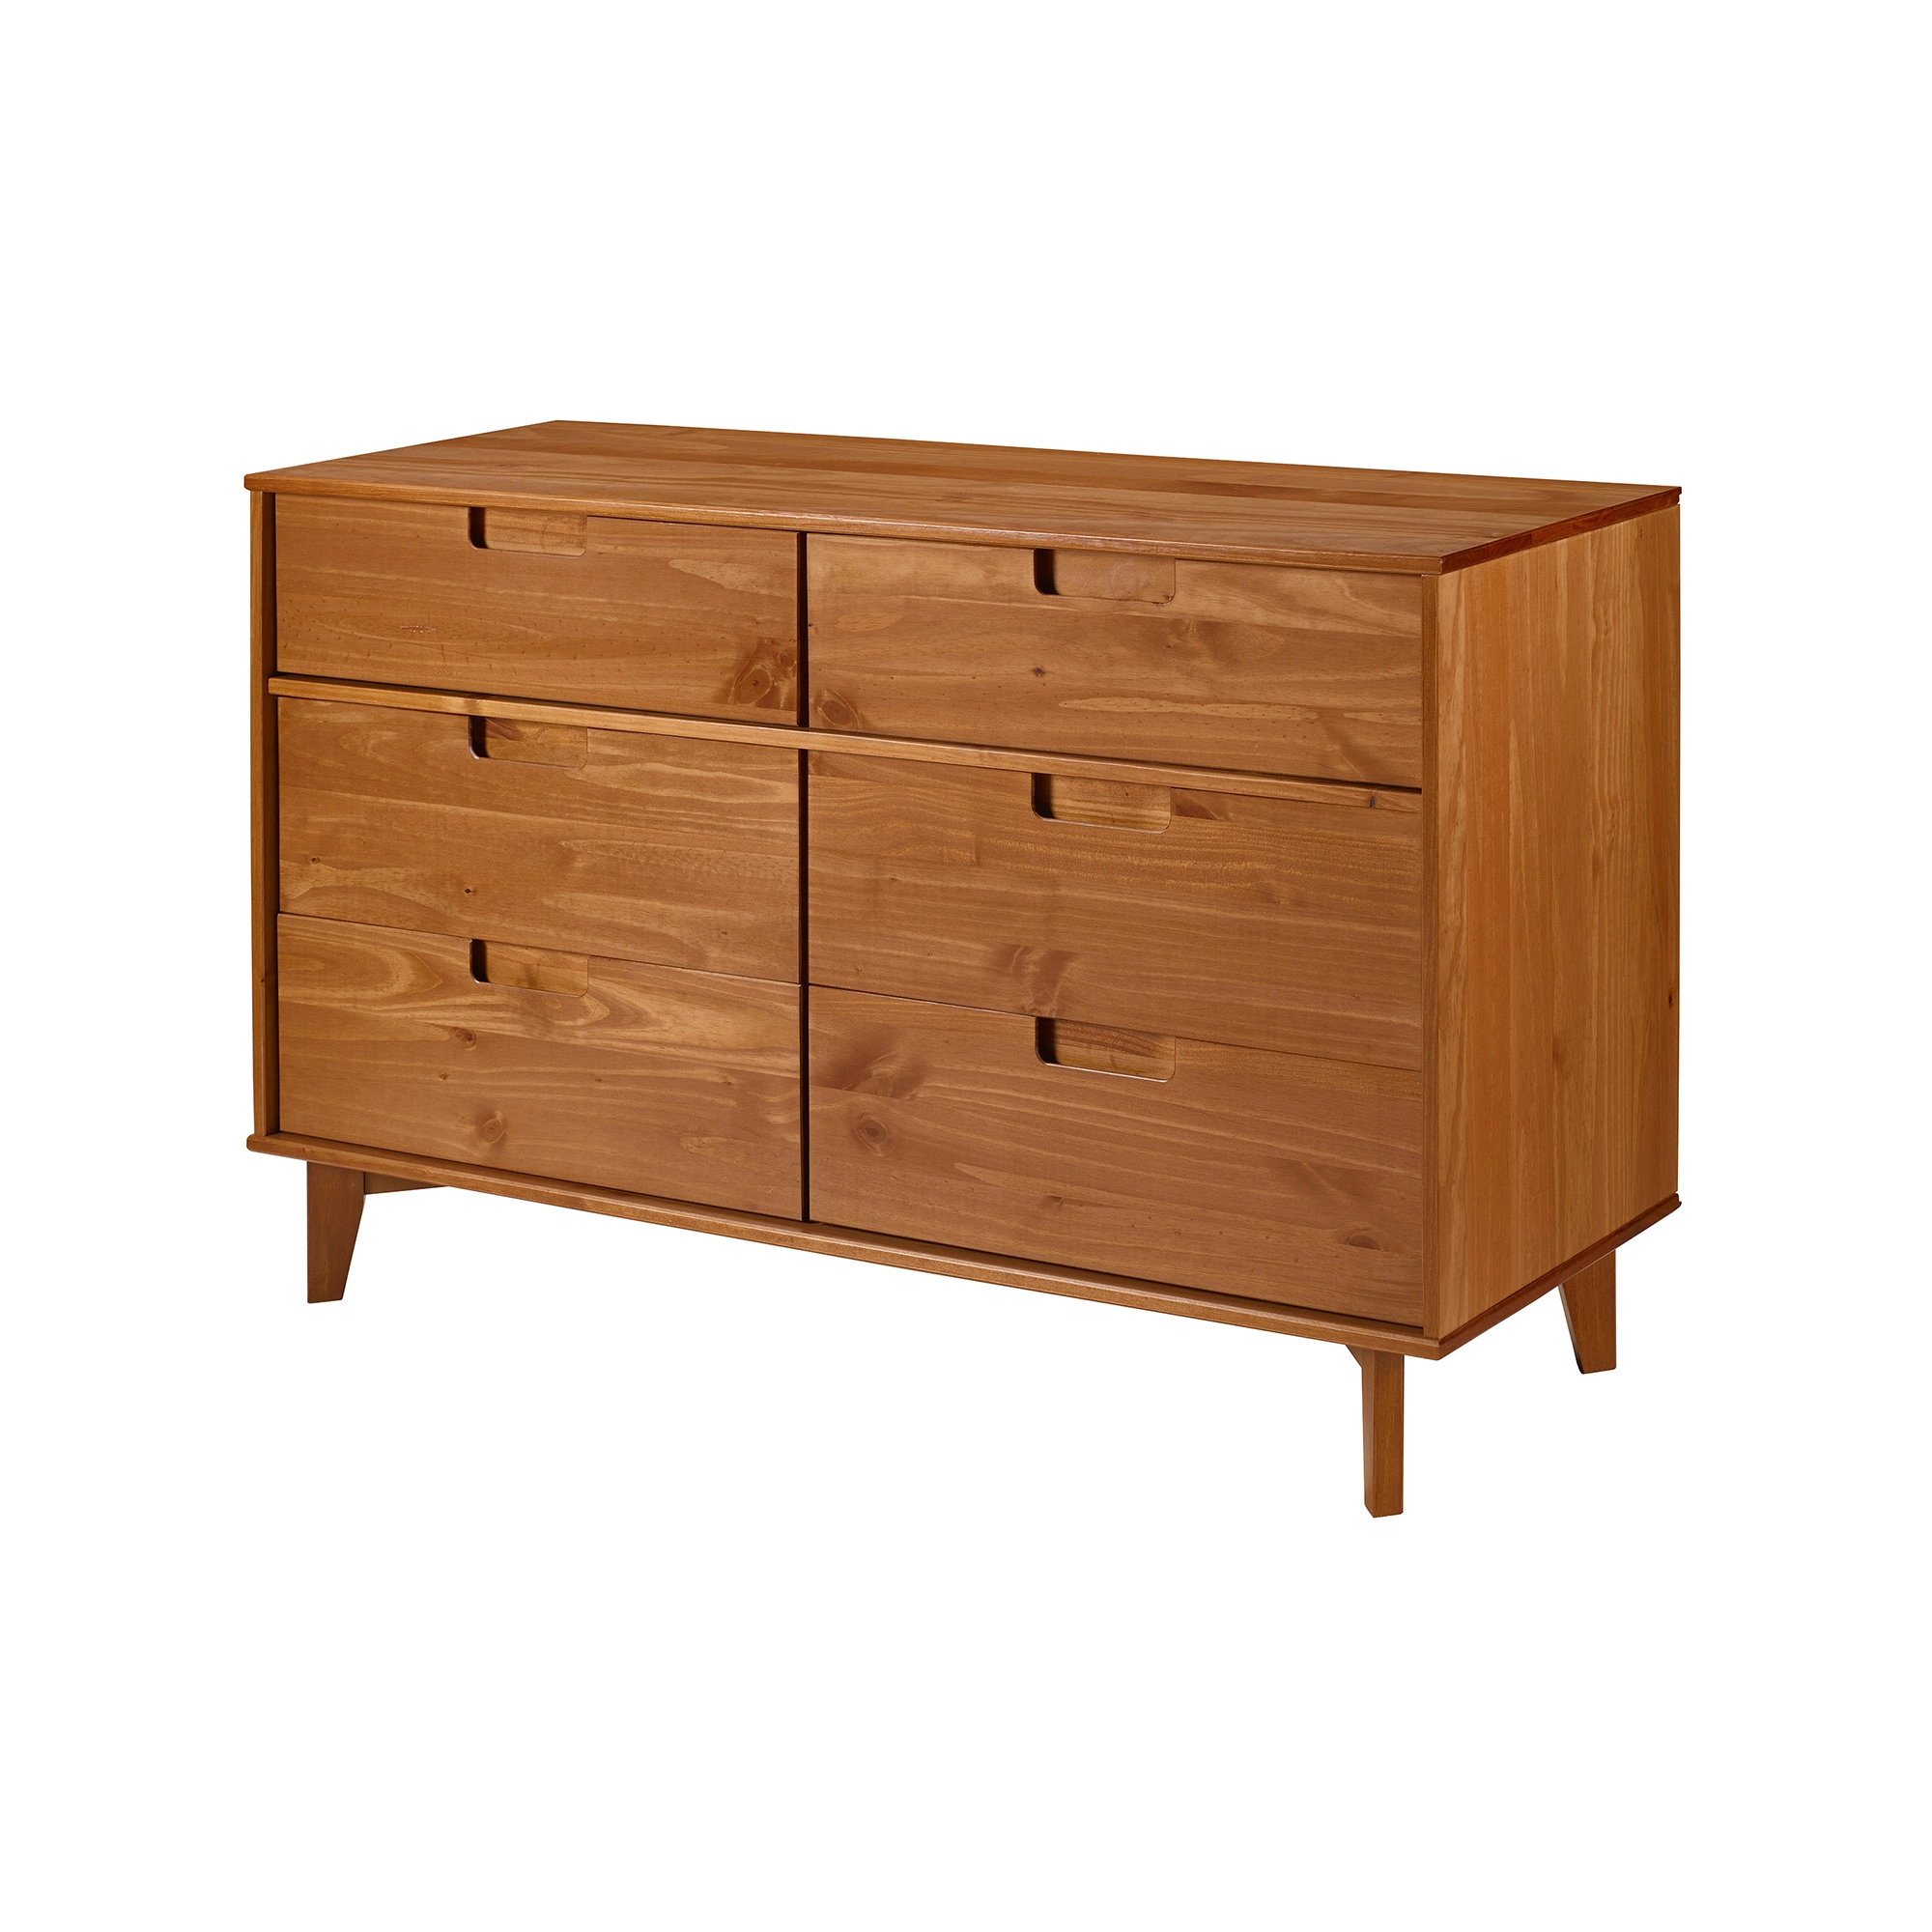 Sloane 6 Drawer Groove Handle Wood Dresser - Caramel - Image 1